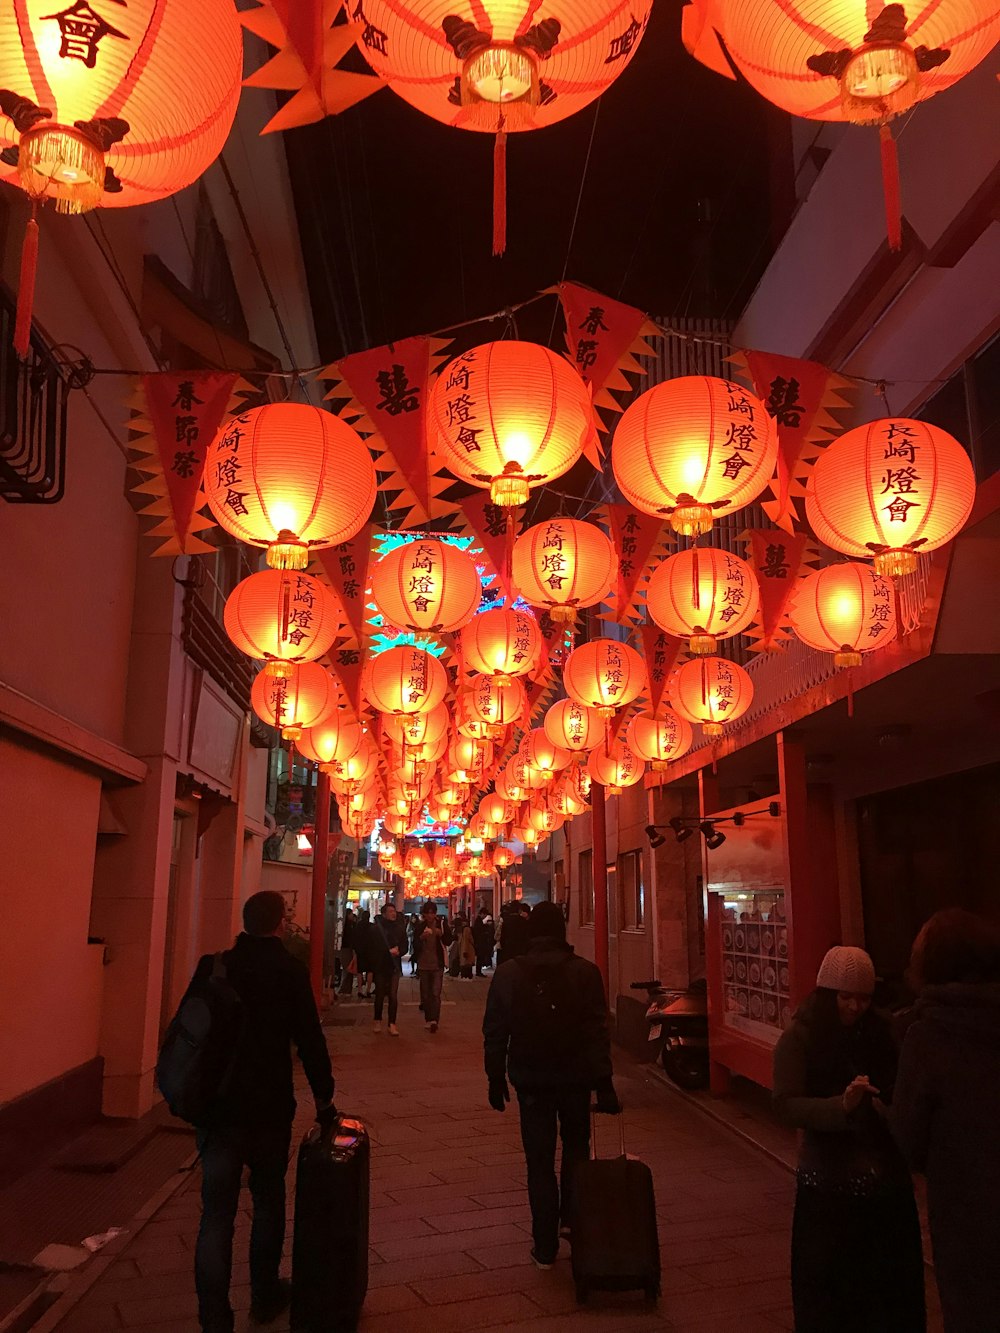 Des lanternes chinoises étaient suspendues au-dessus des gens